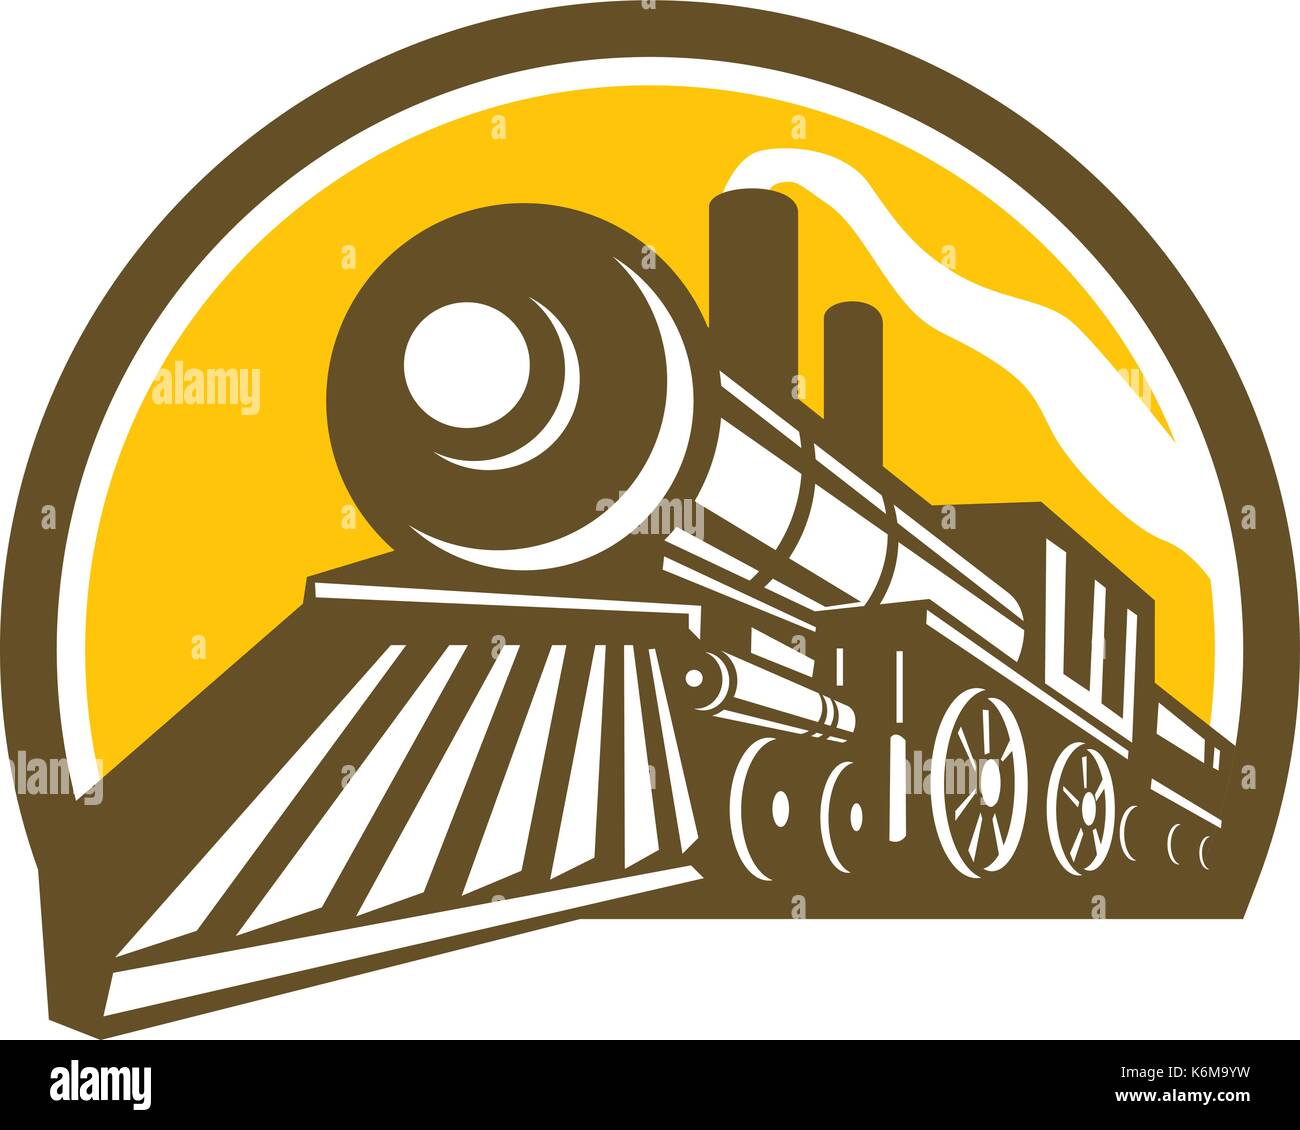 Style d'icône illustration d'une locomotive à vapeur train ferroviaire vue depuis un angle bas situé à l'intérieur du cercle sur fond isolé. Illustration de Vecteur